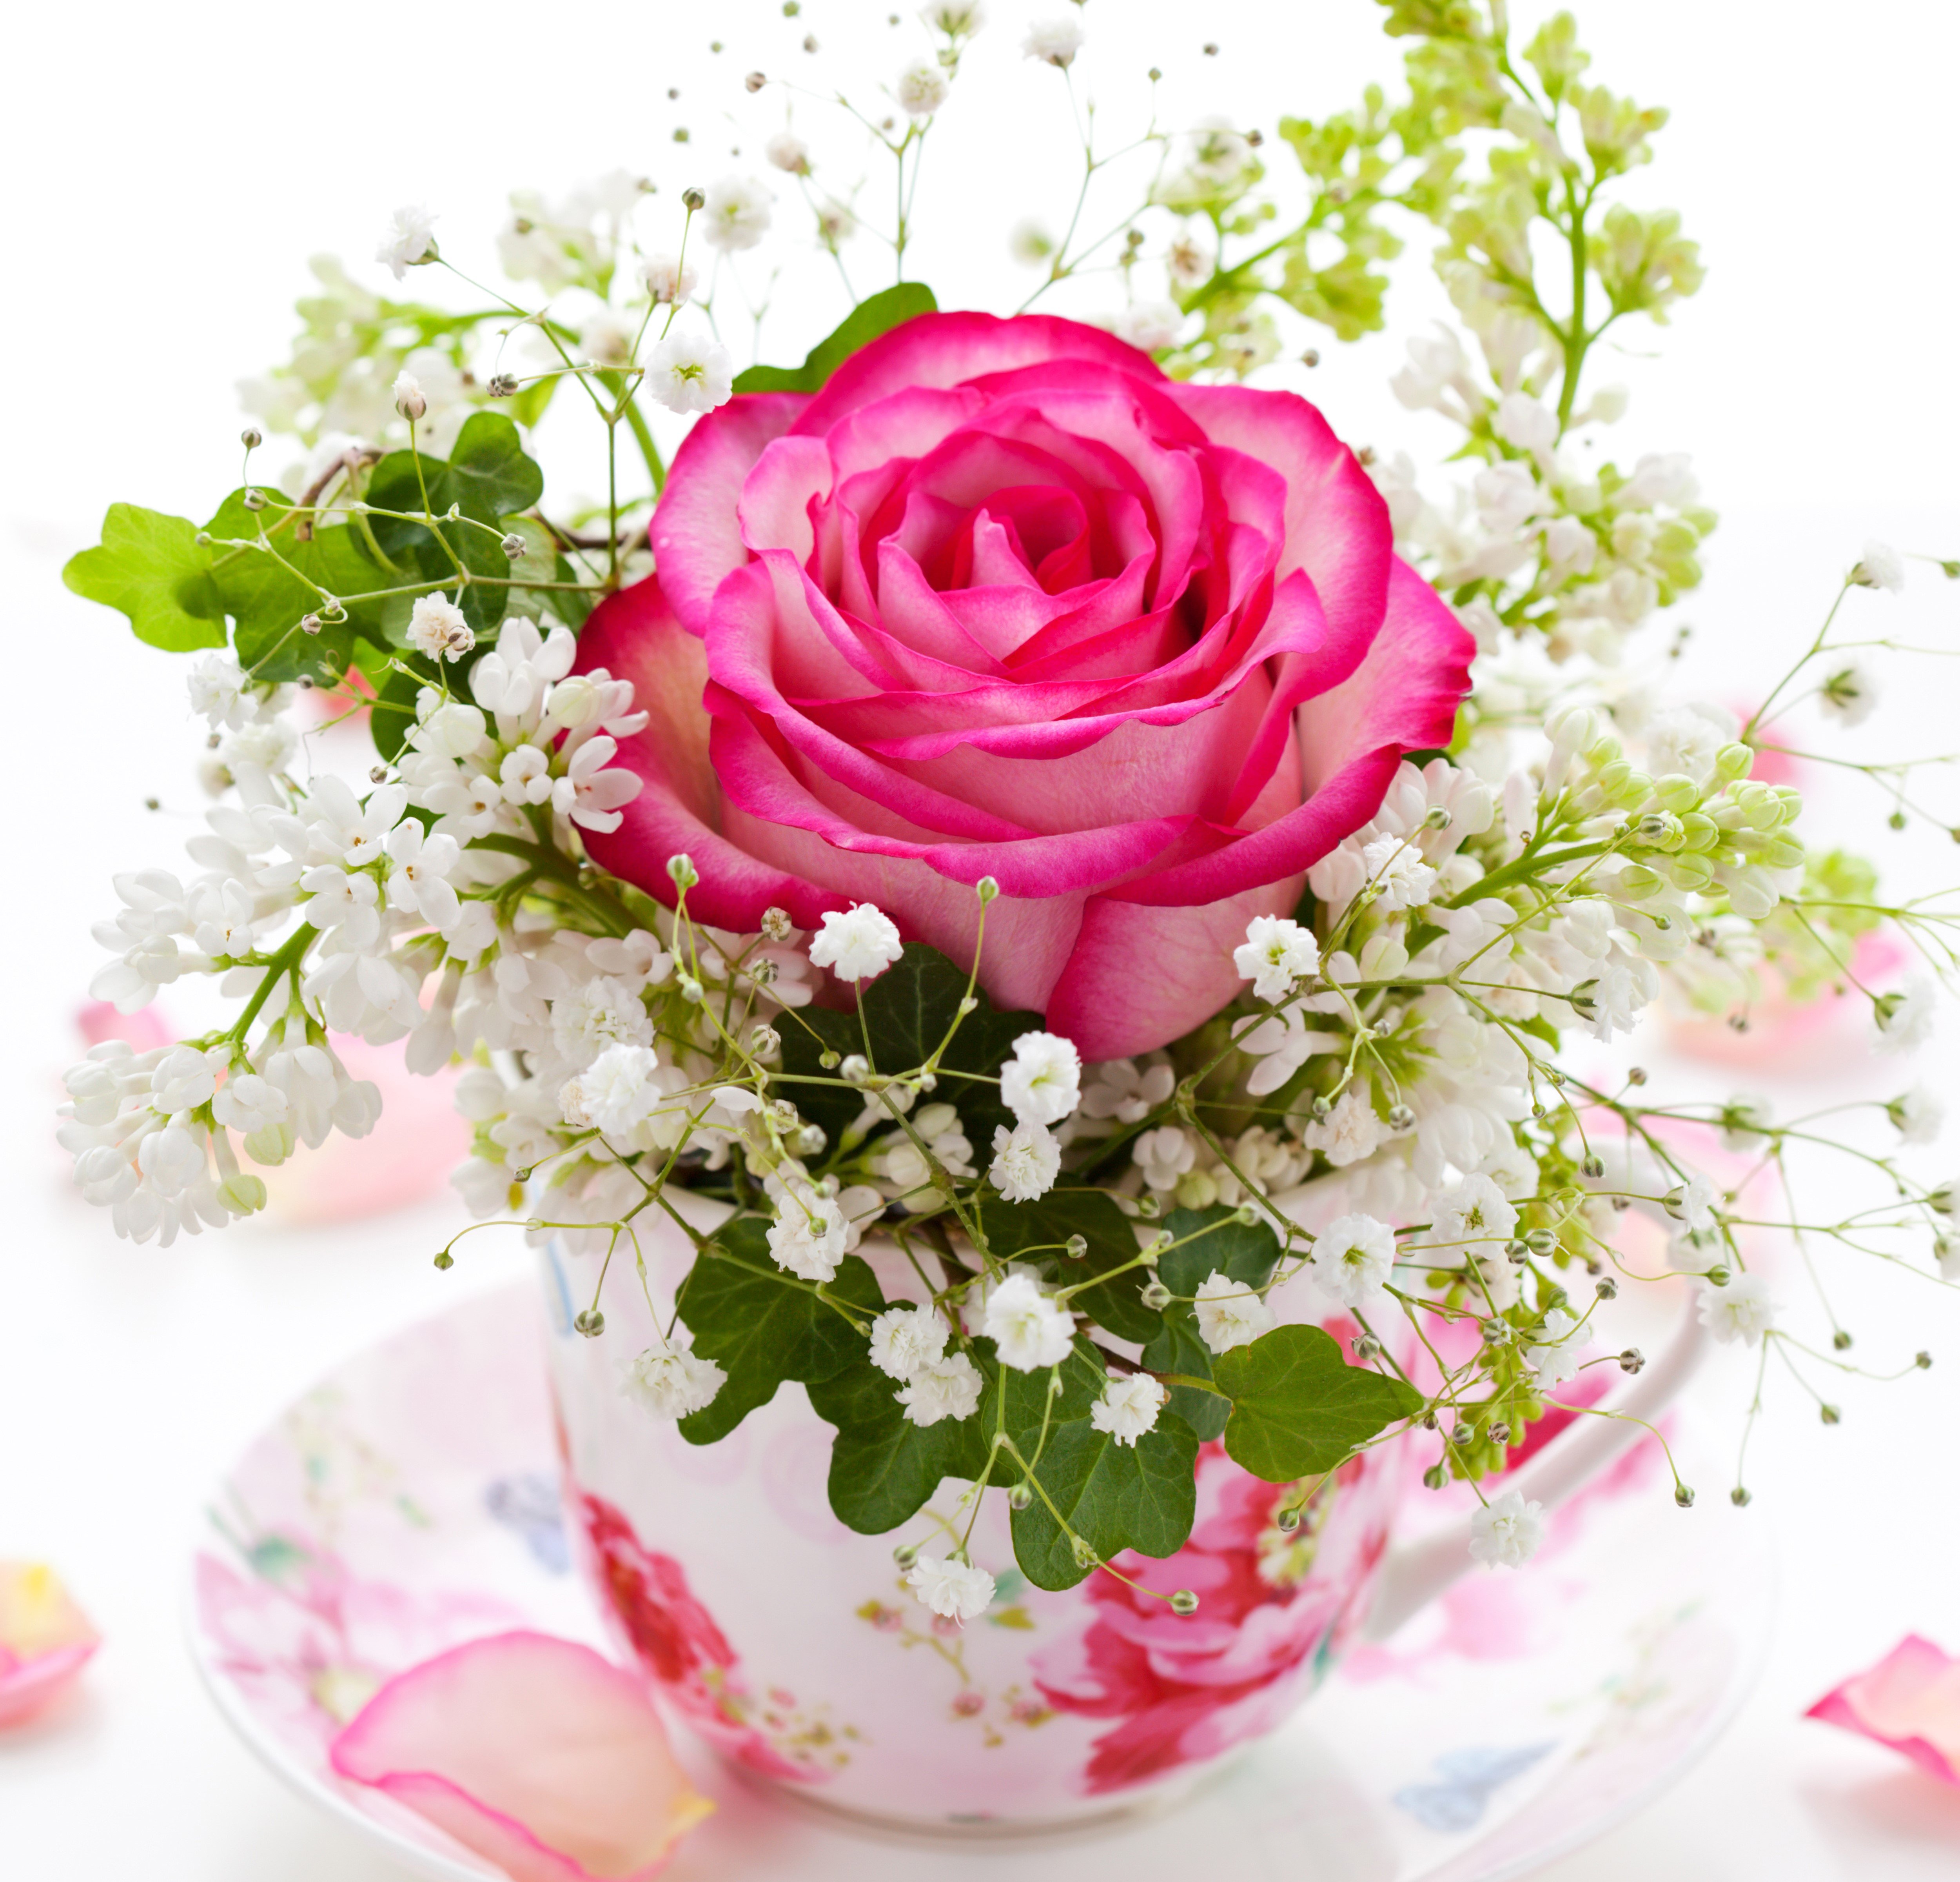 С хорошим днем картинки красивые цветы. Красивые цветы в вазе. Красивый букет в вазе. Цветы в кружке. Открытка цветы.